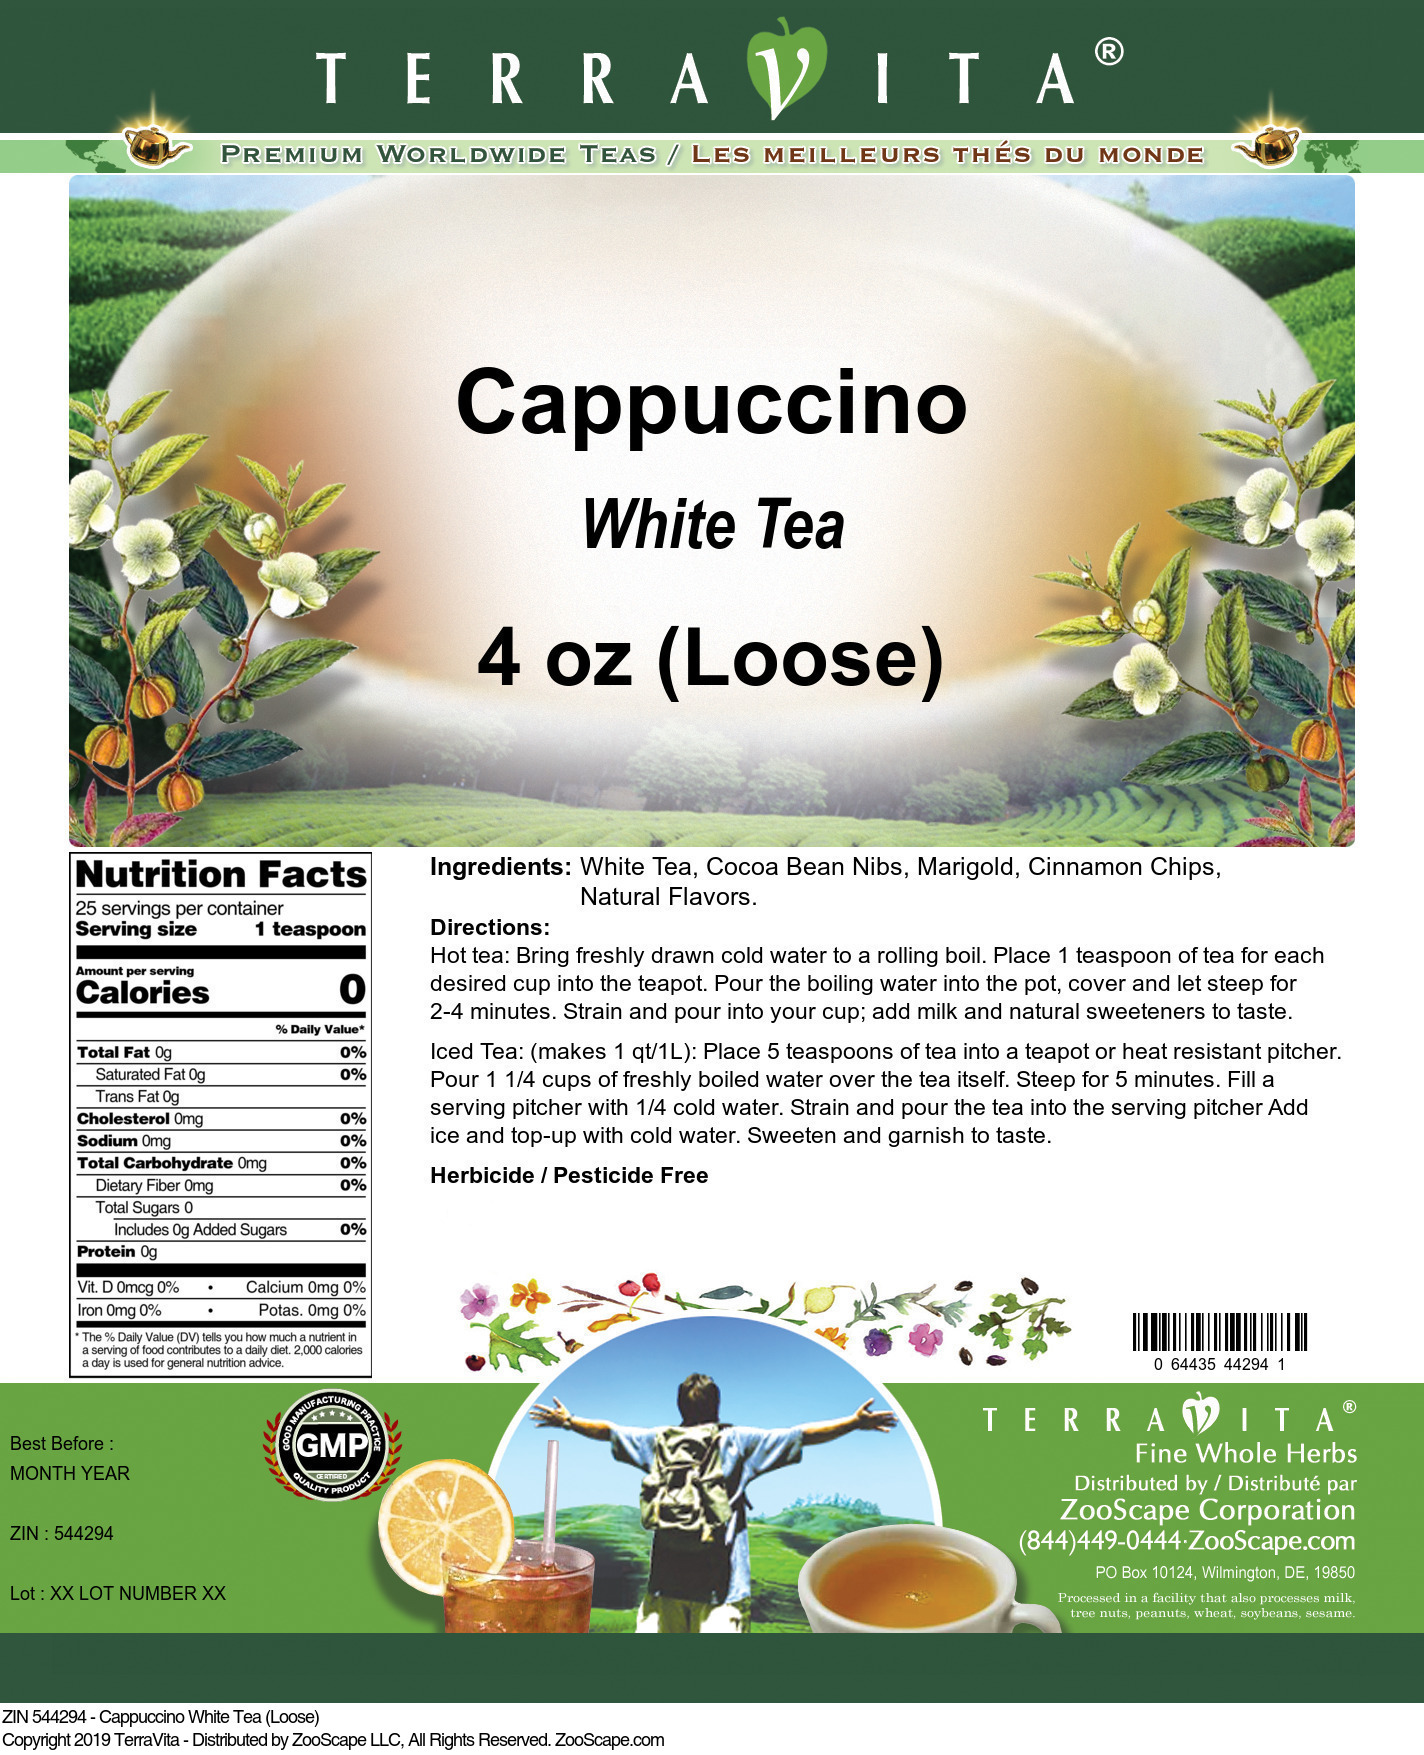 Cappuccino White Tea (Loose) - Label